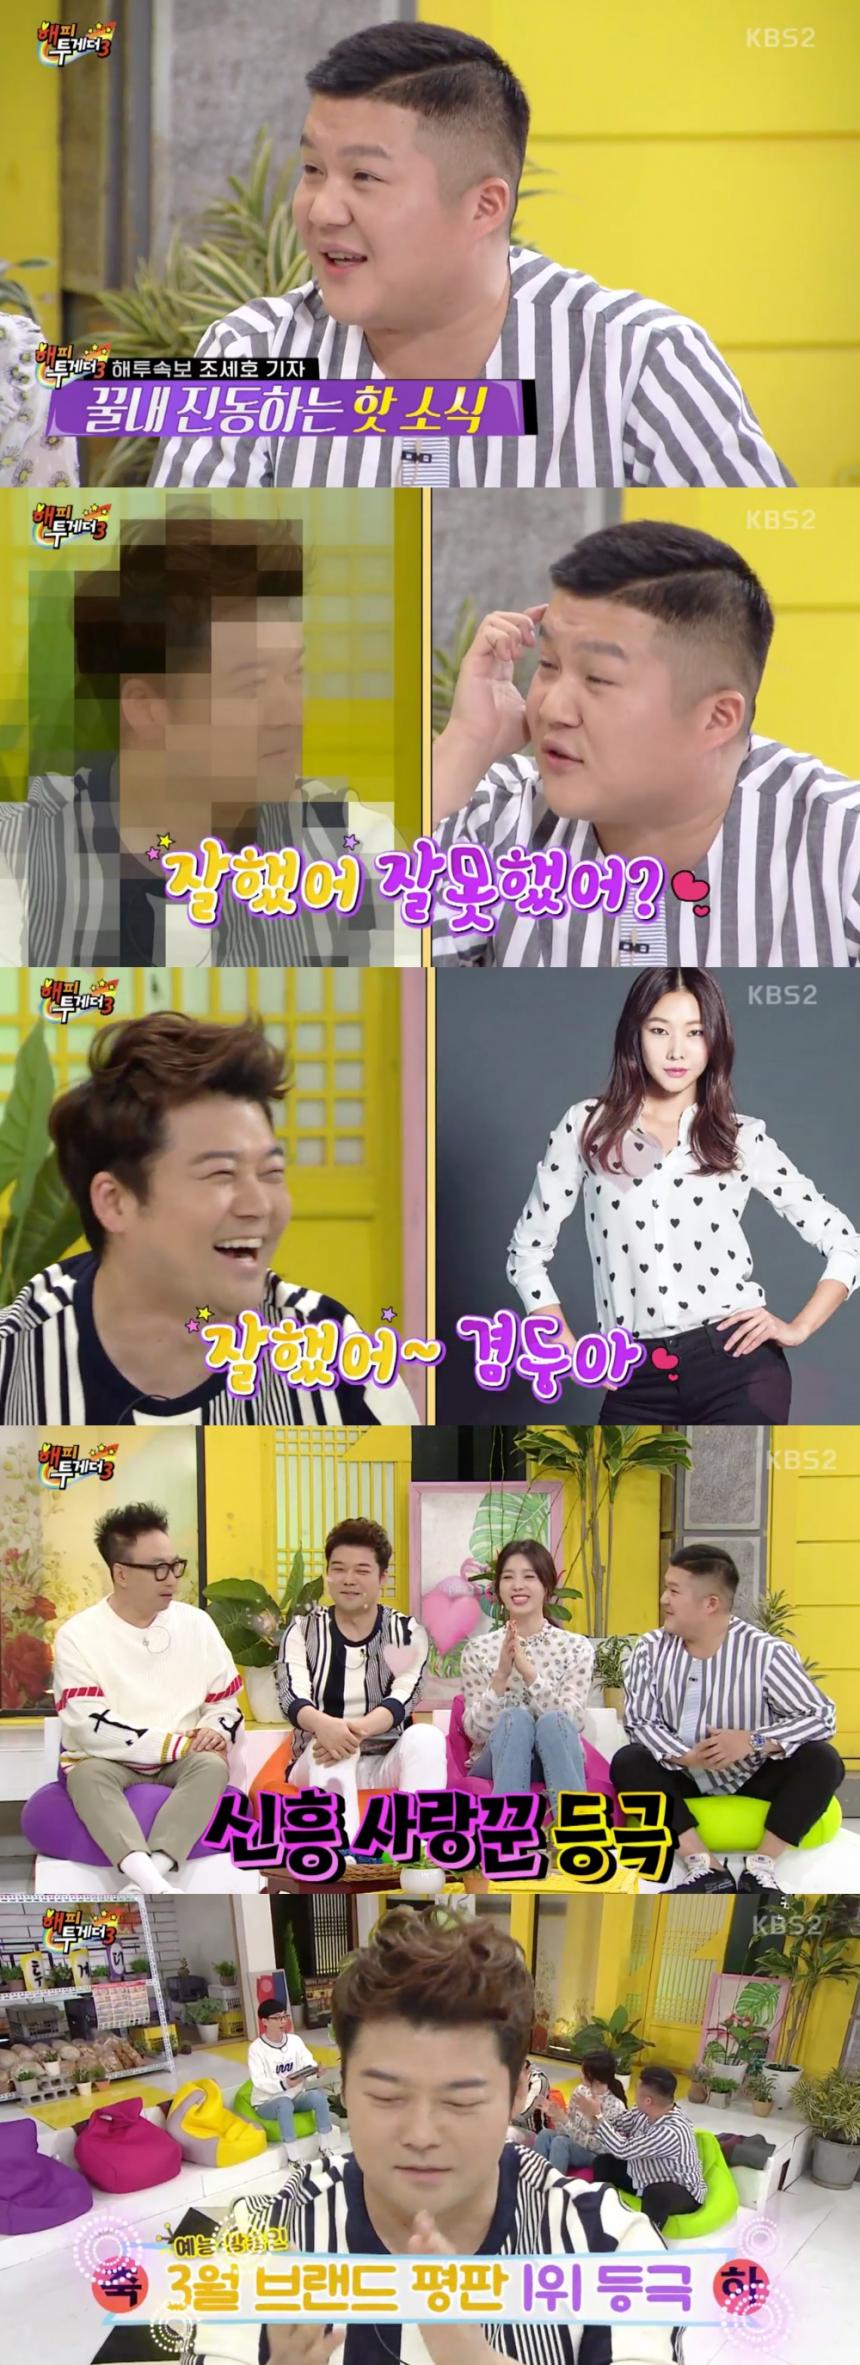 KBS2 ‘해피투게더 시즌3’ 방송캡쳐